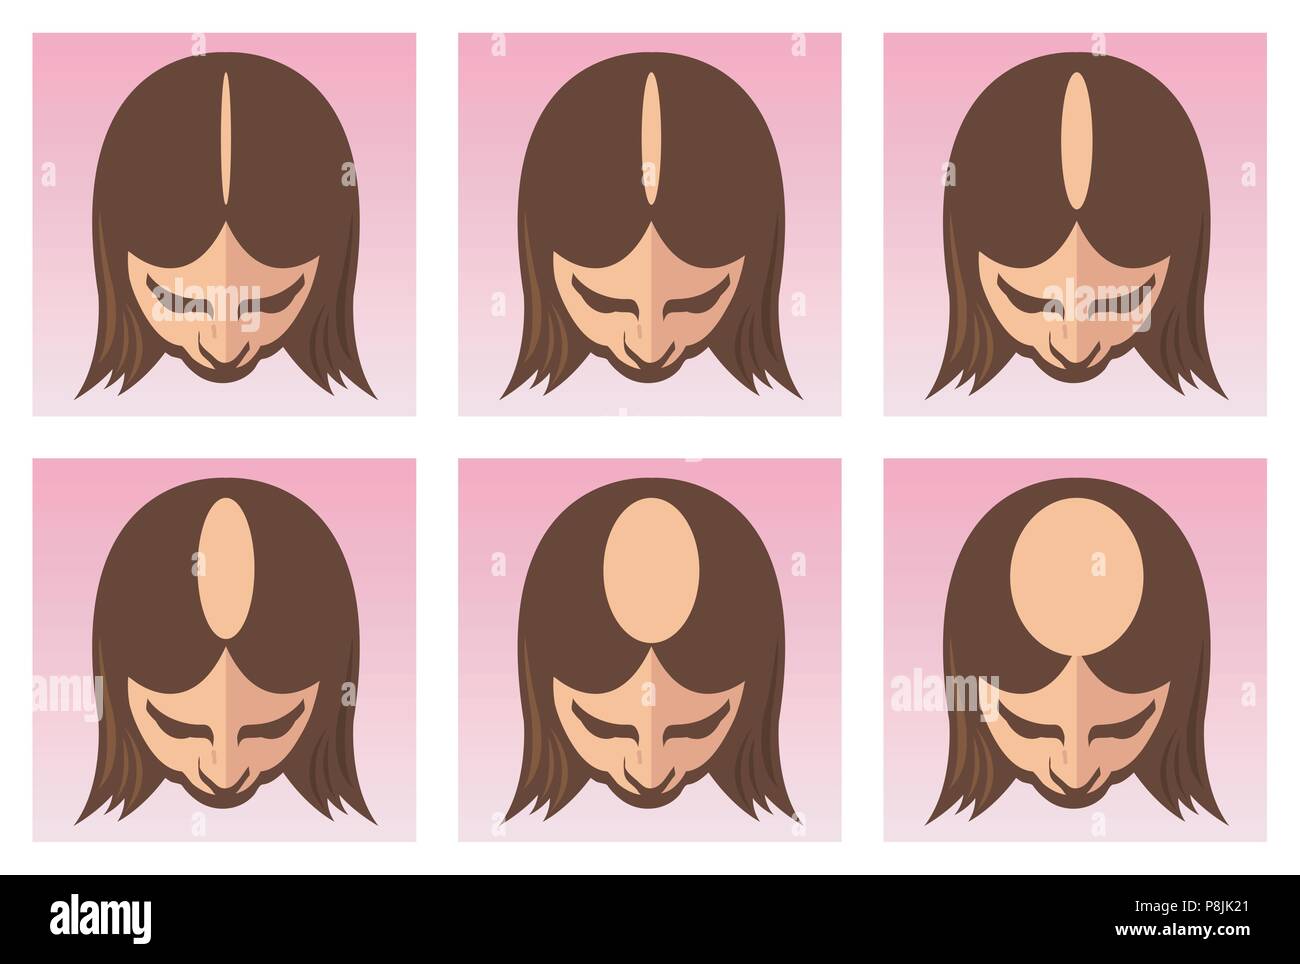 Un vecteur medical illustration des étapes de l'alopécie femelle ou la perte de cheveux. Illustration de Vecteur